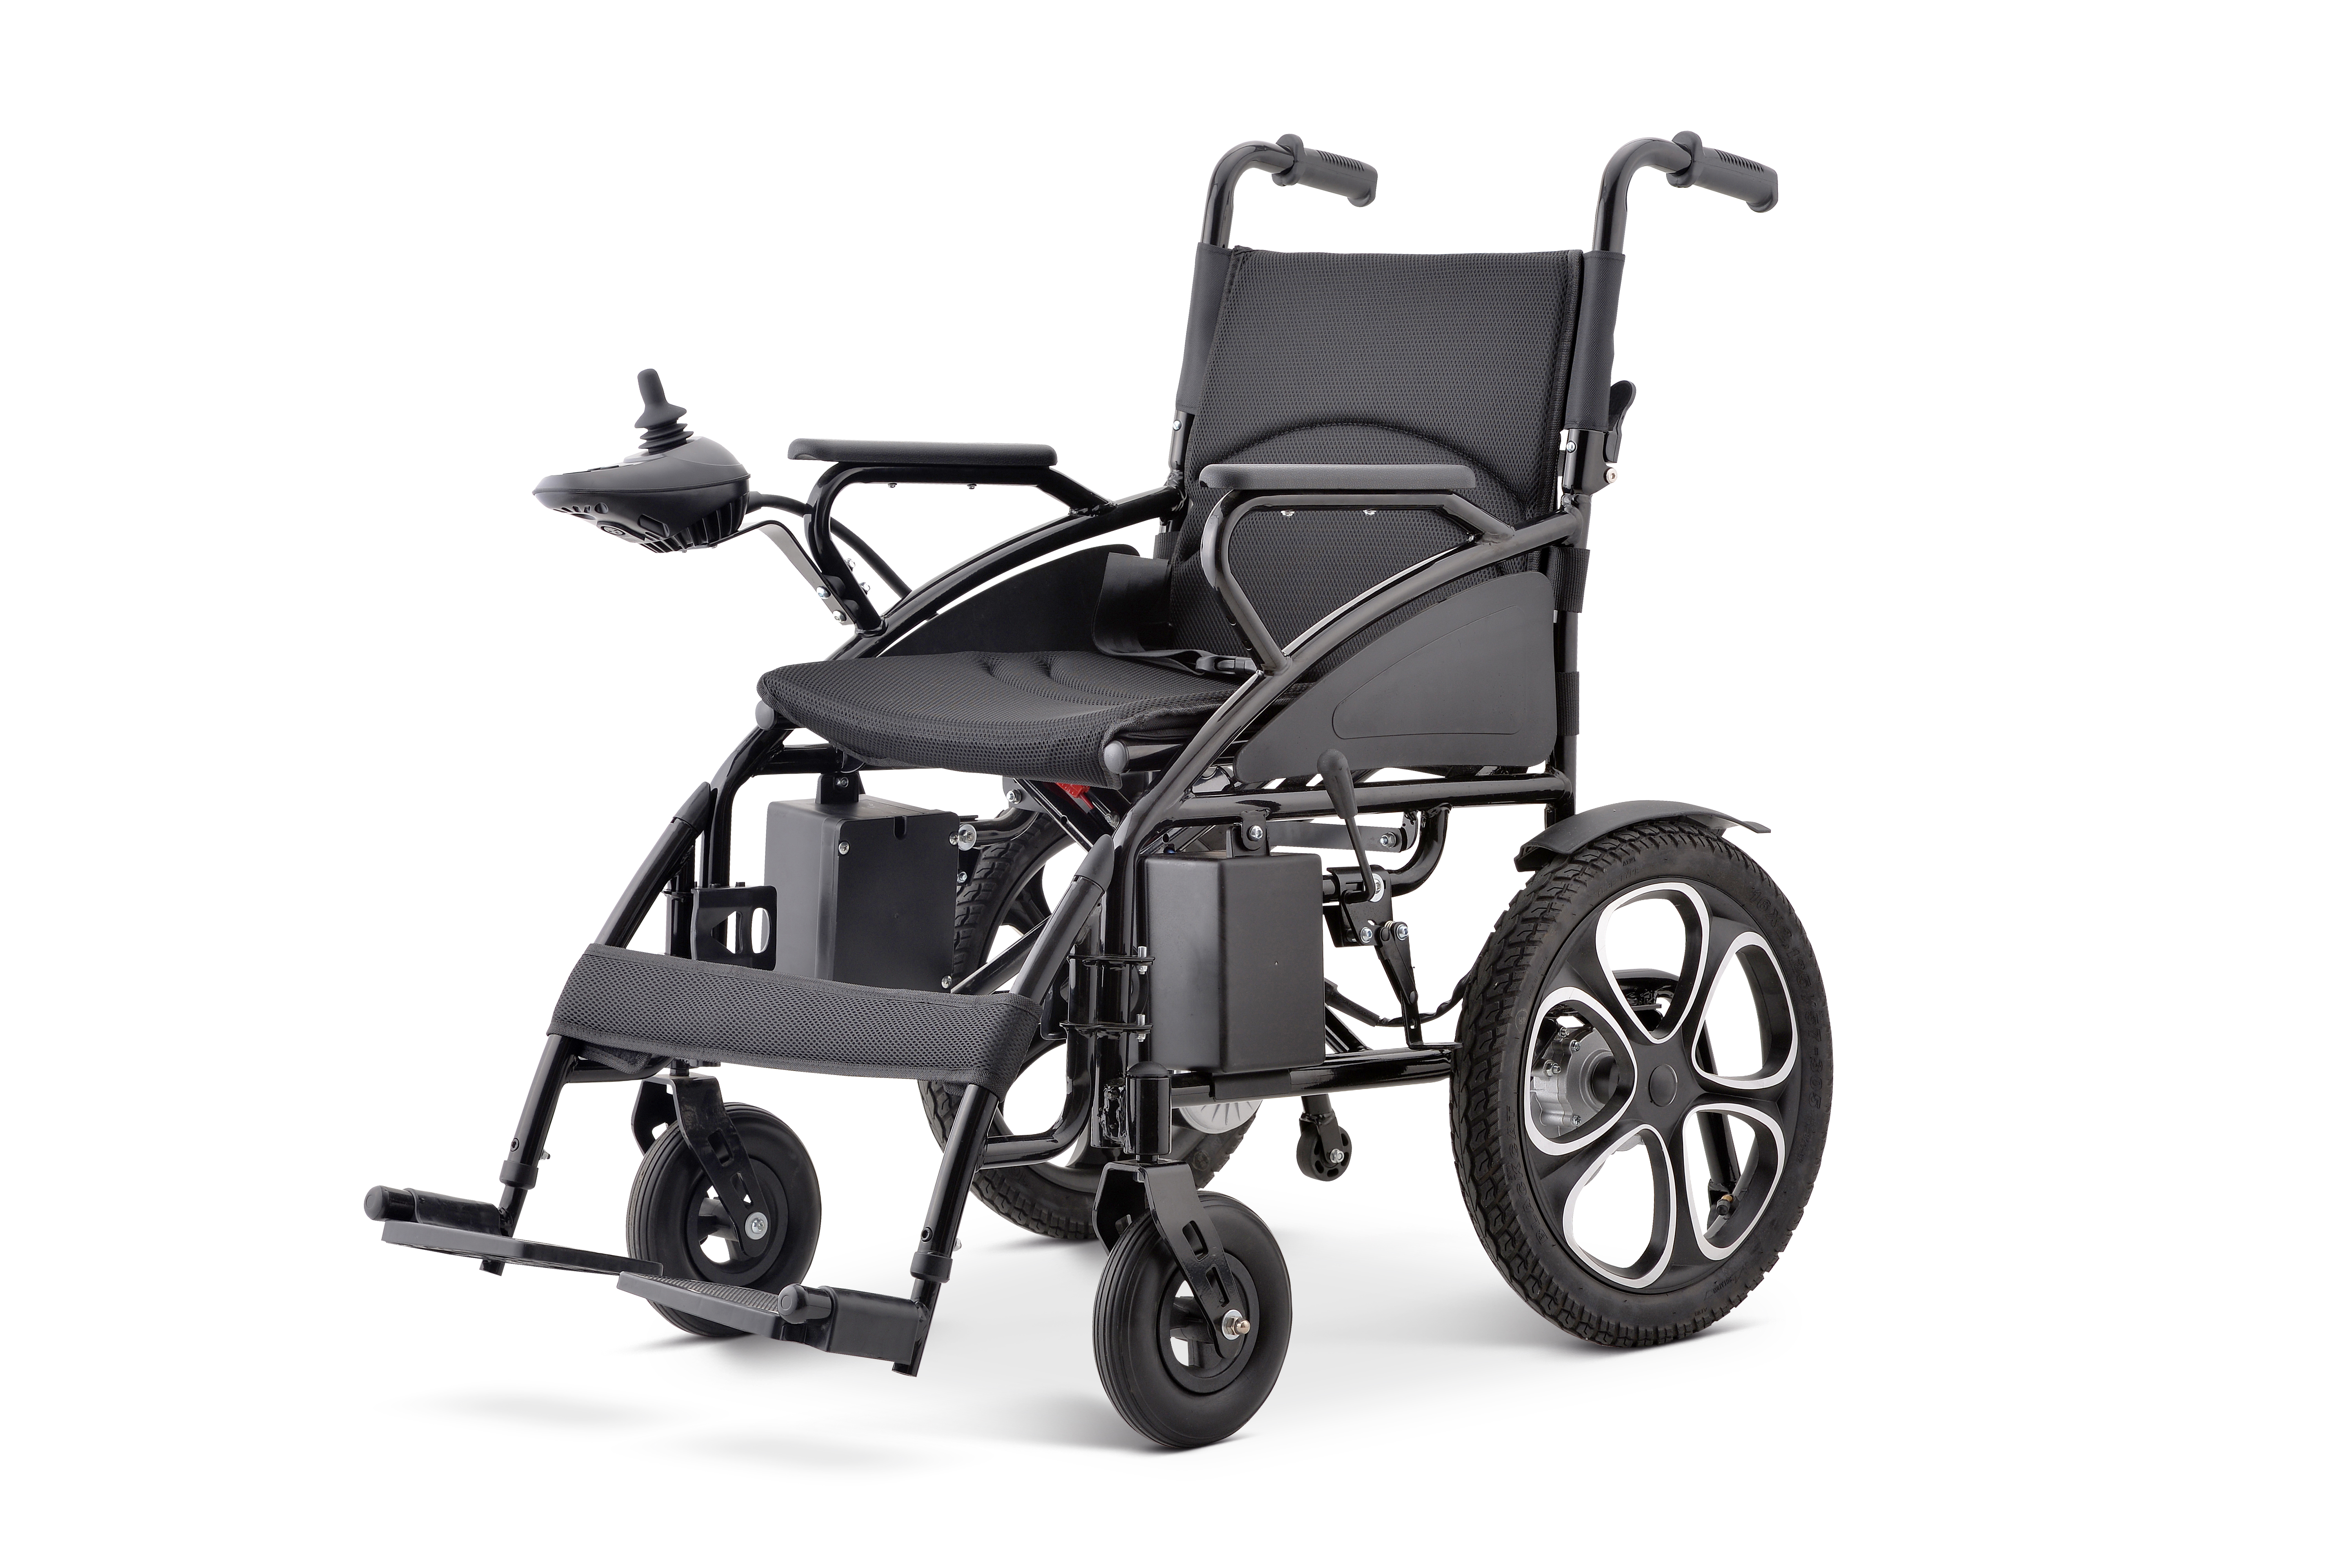 Fauteuil roulant électrique pliant en acier et aluminium, fauteuil roulant électrique manuel avec accoudoir incliné rabattable et réglable en hauteur